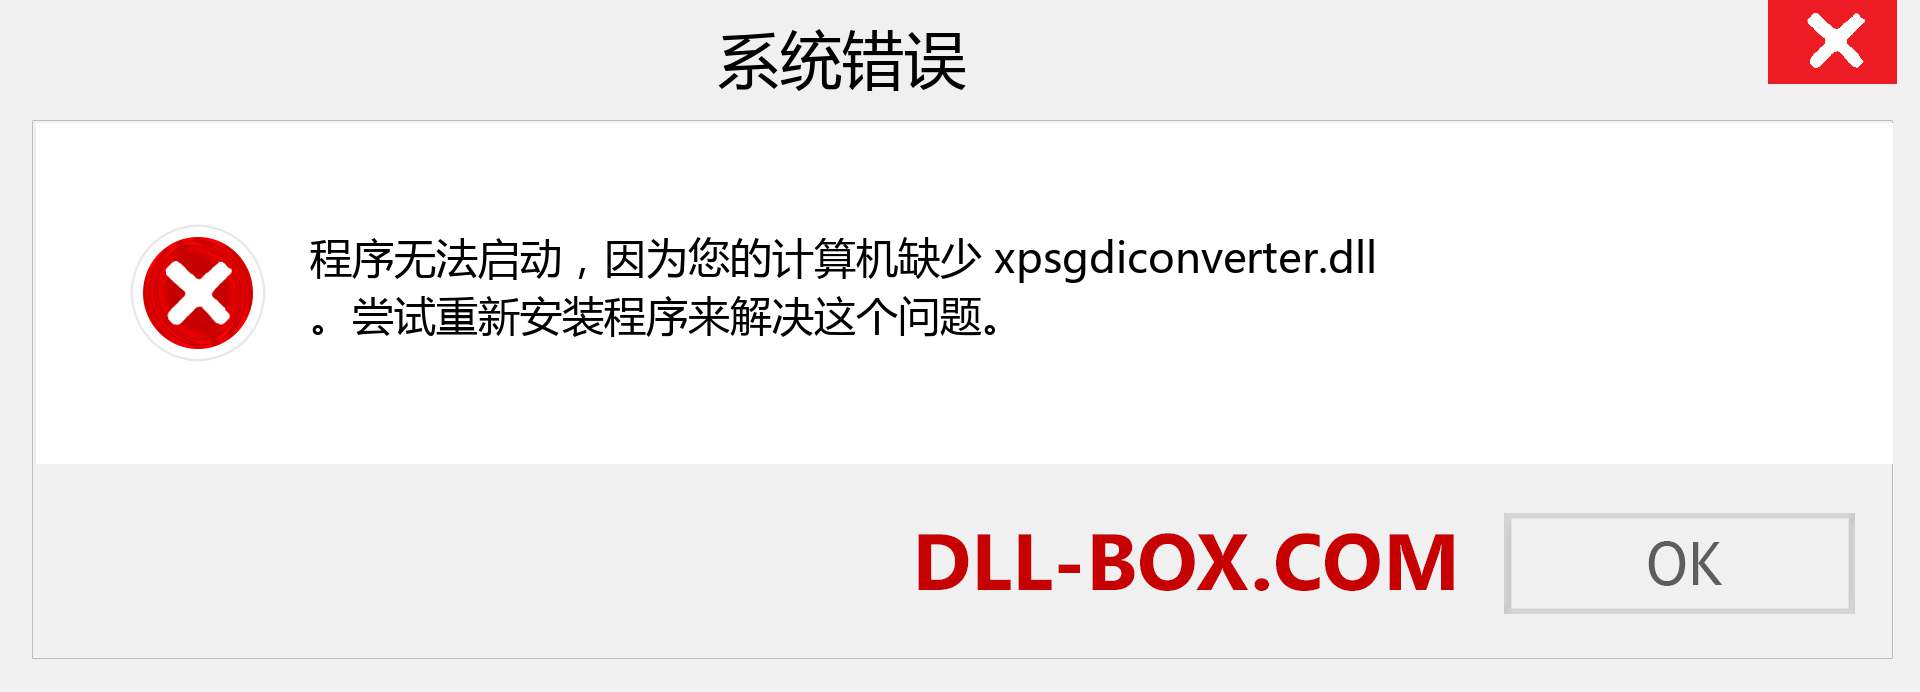 xpsgdiconverter.dll 文件丢失？。 适用于 Windows 7、8、10 的下载 - 修复 Windows、照片、图像上的 xpsgdiconverter dll 丢失错误